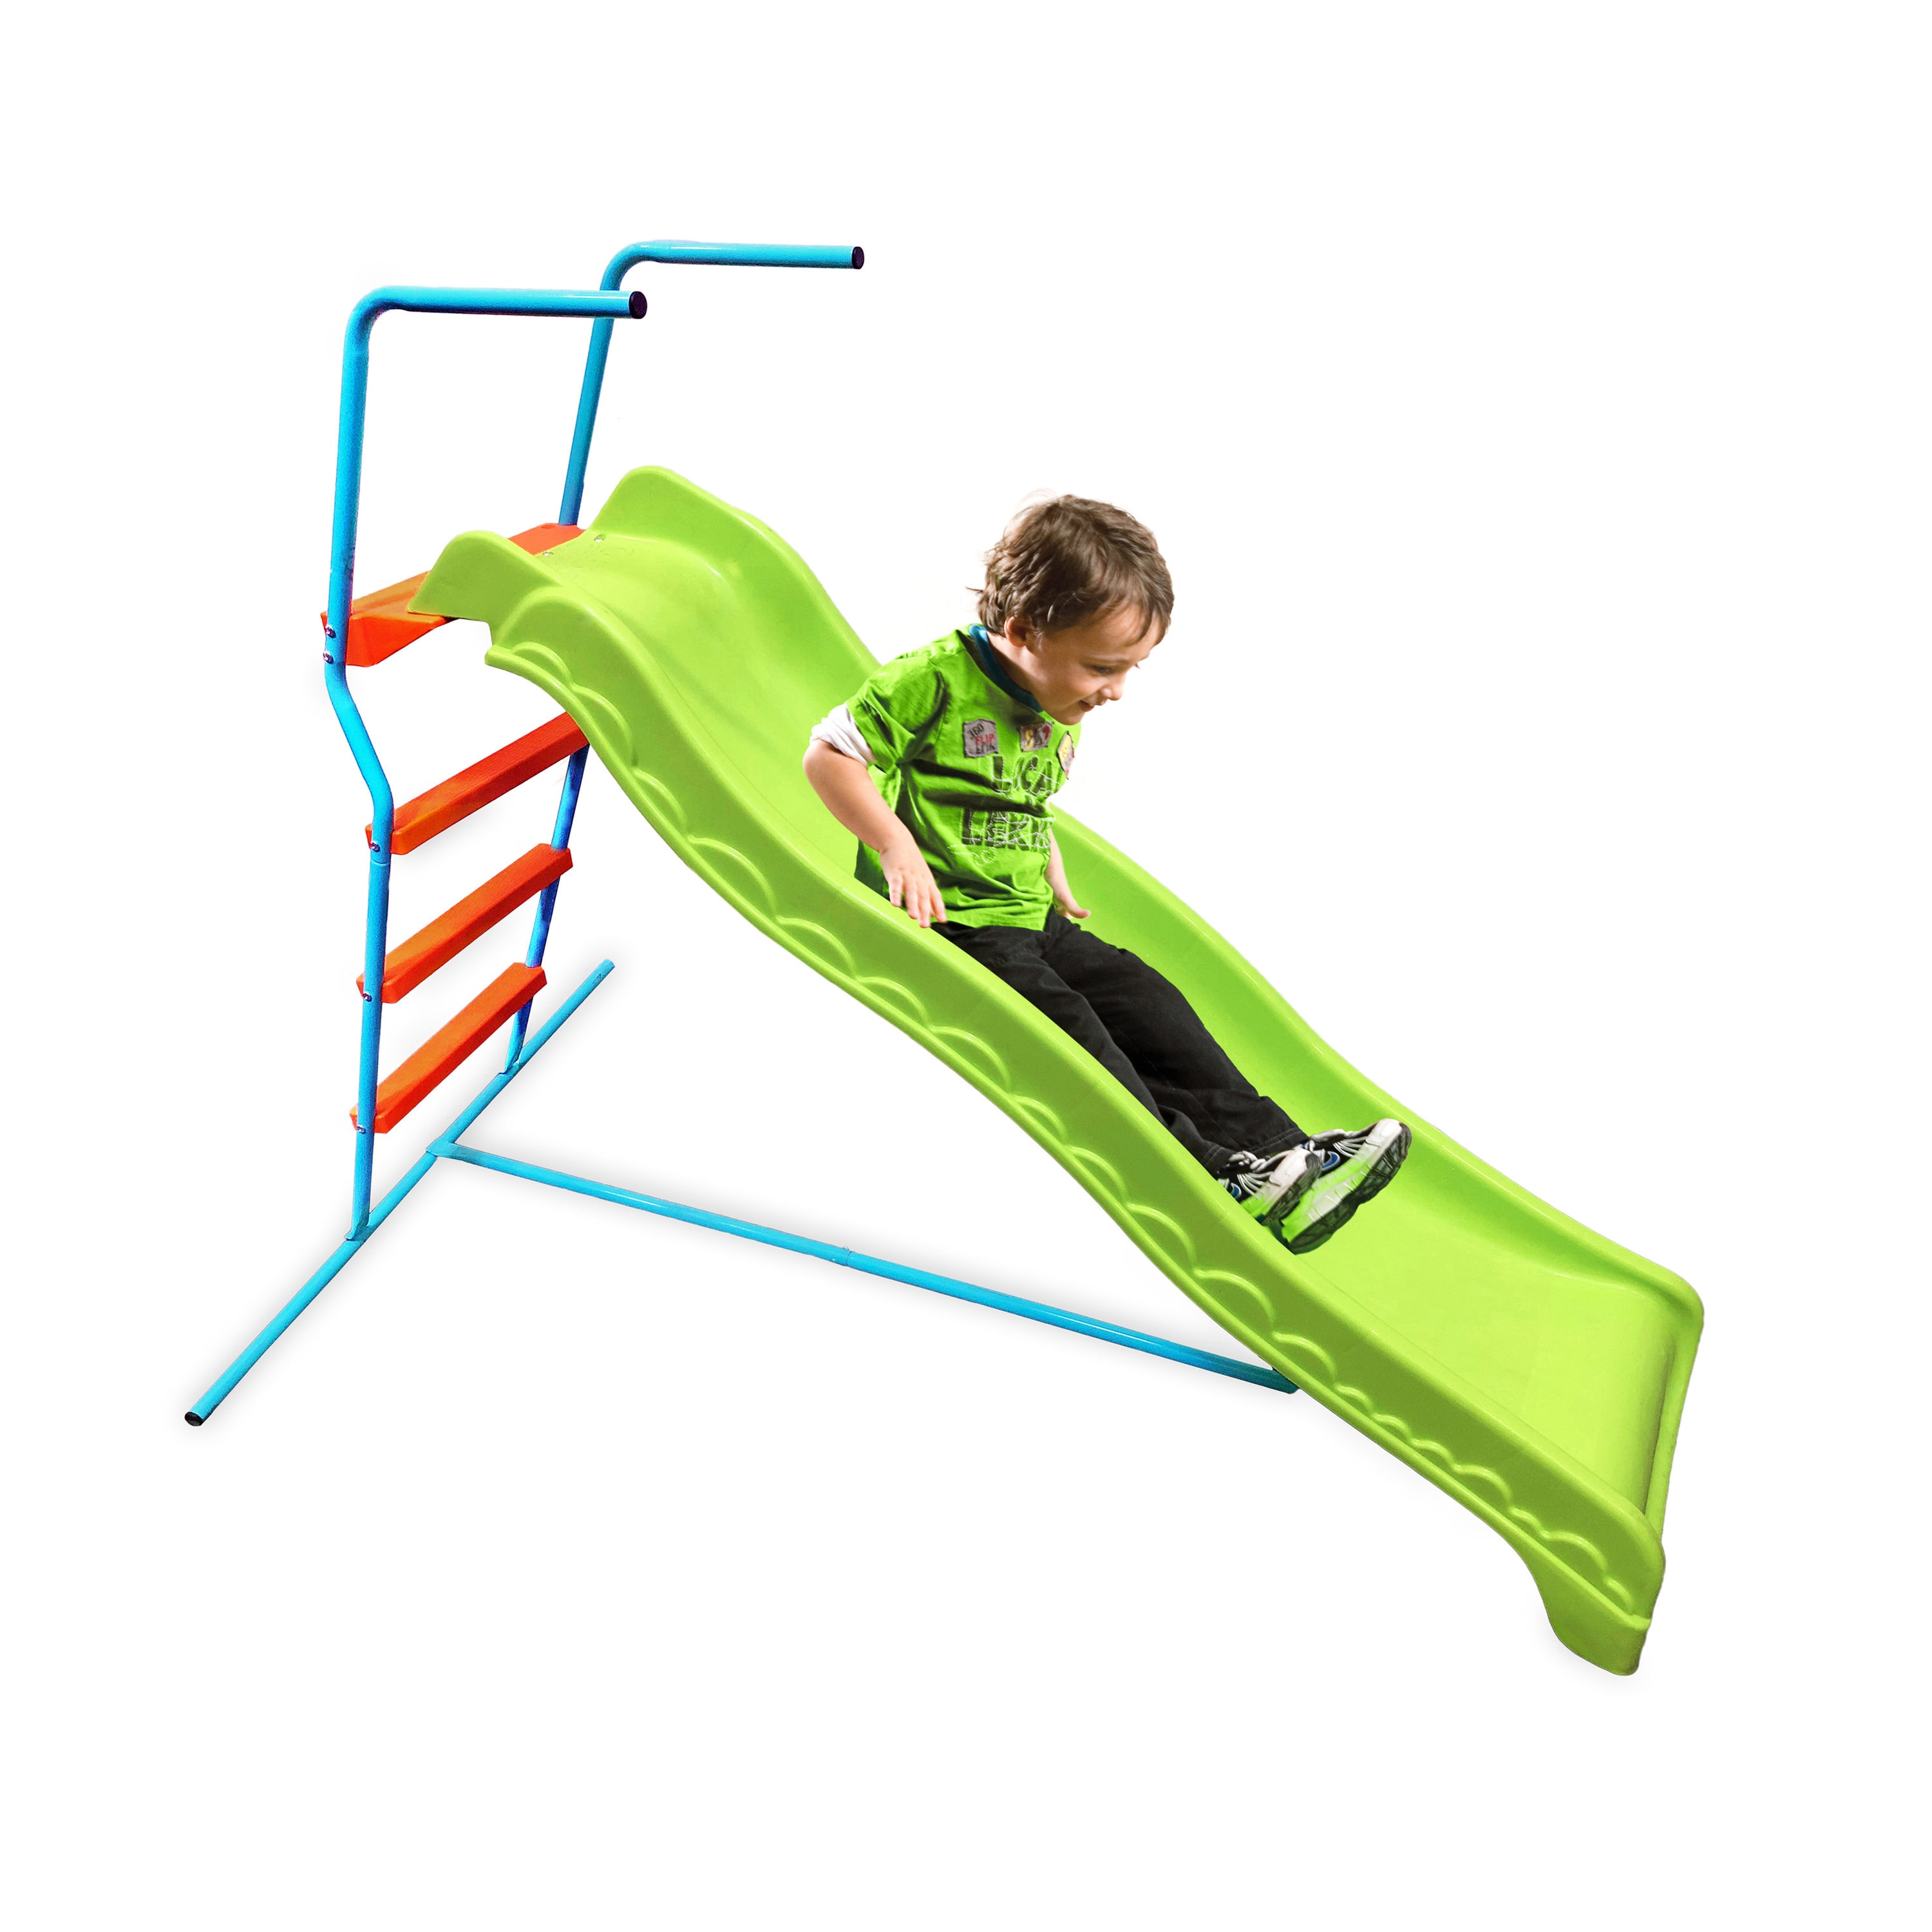 Outdoor Large Kids Slide with Waves Garden Playground Slide Children Play Green 